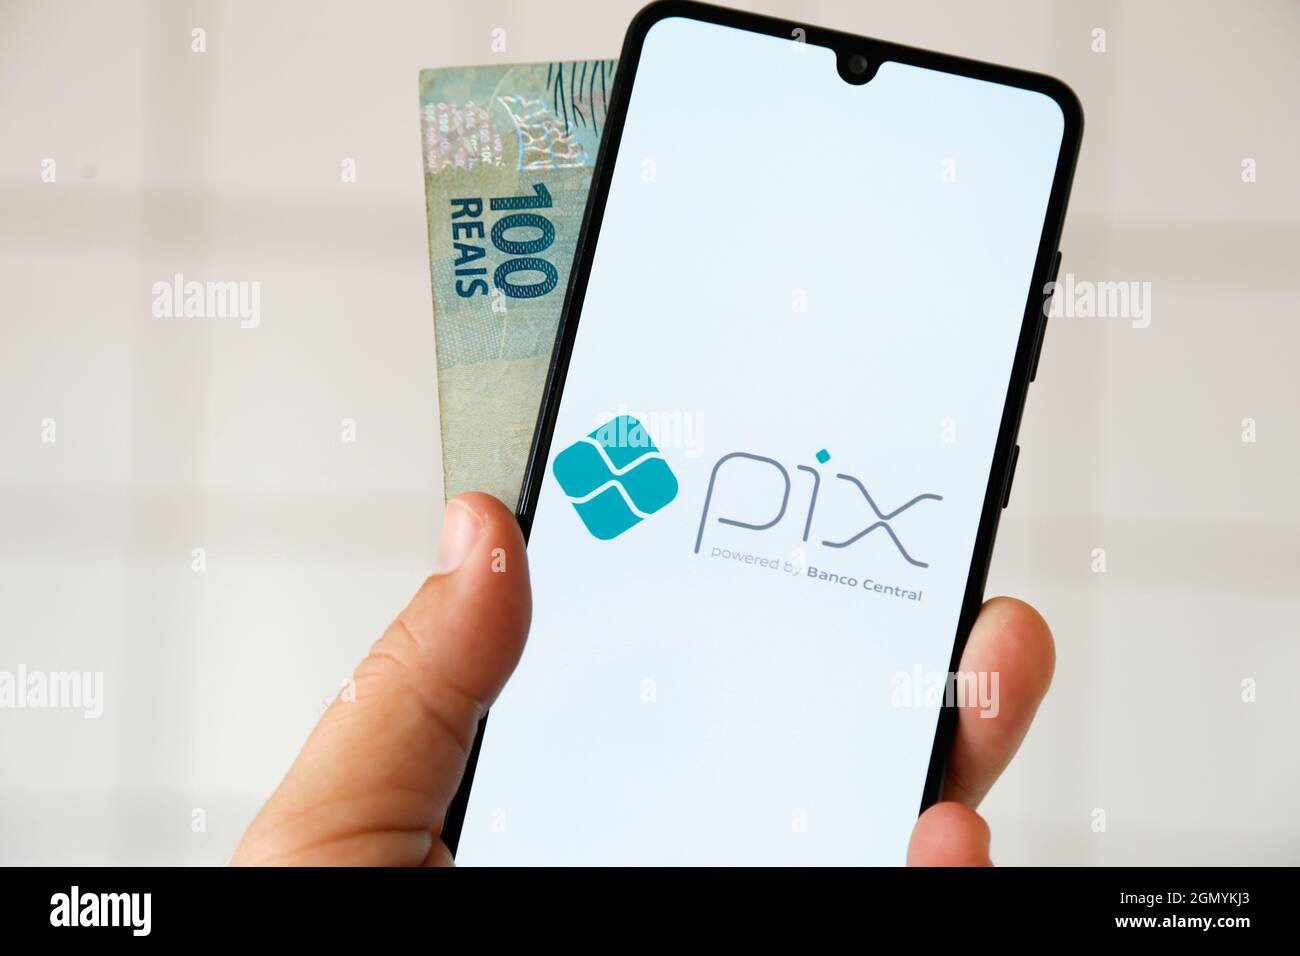 Minas Gerais, Brasile - 29 aprile 2021: Schermo del telefono cellulare con Pix banca centrale del brasile sistema di pagamento istantaneo Foto Stock